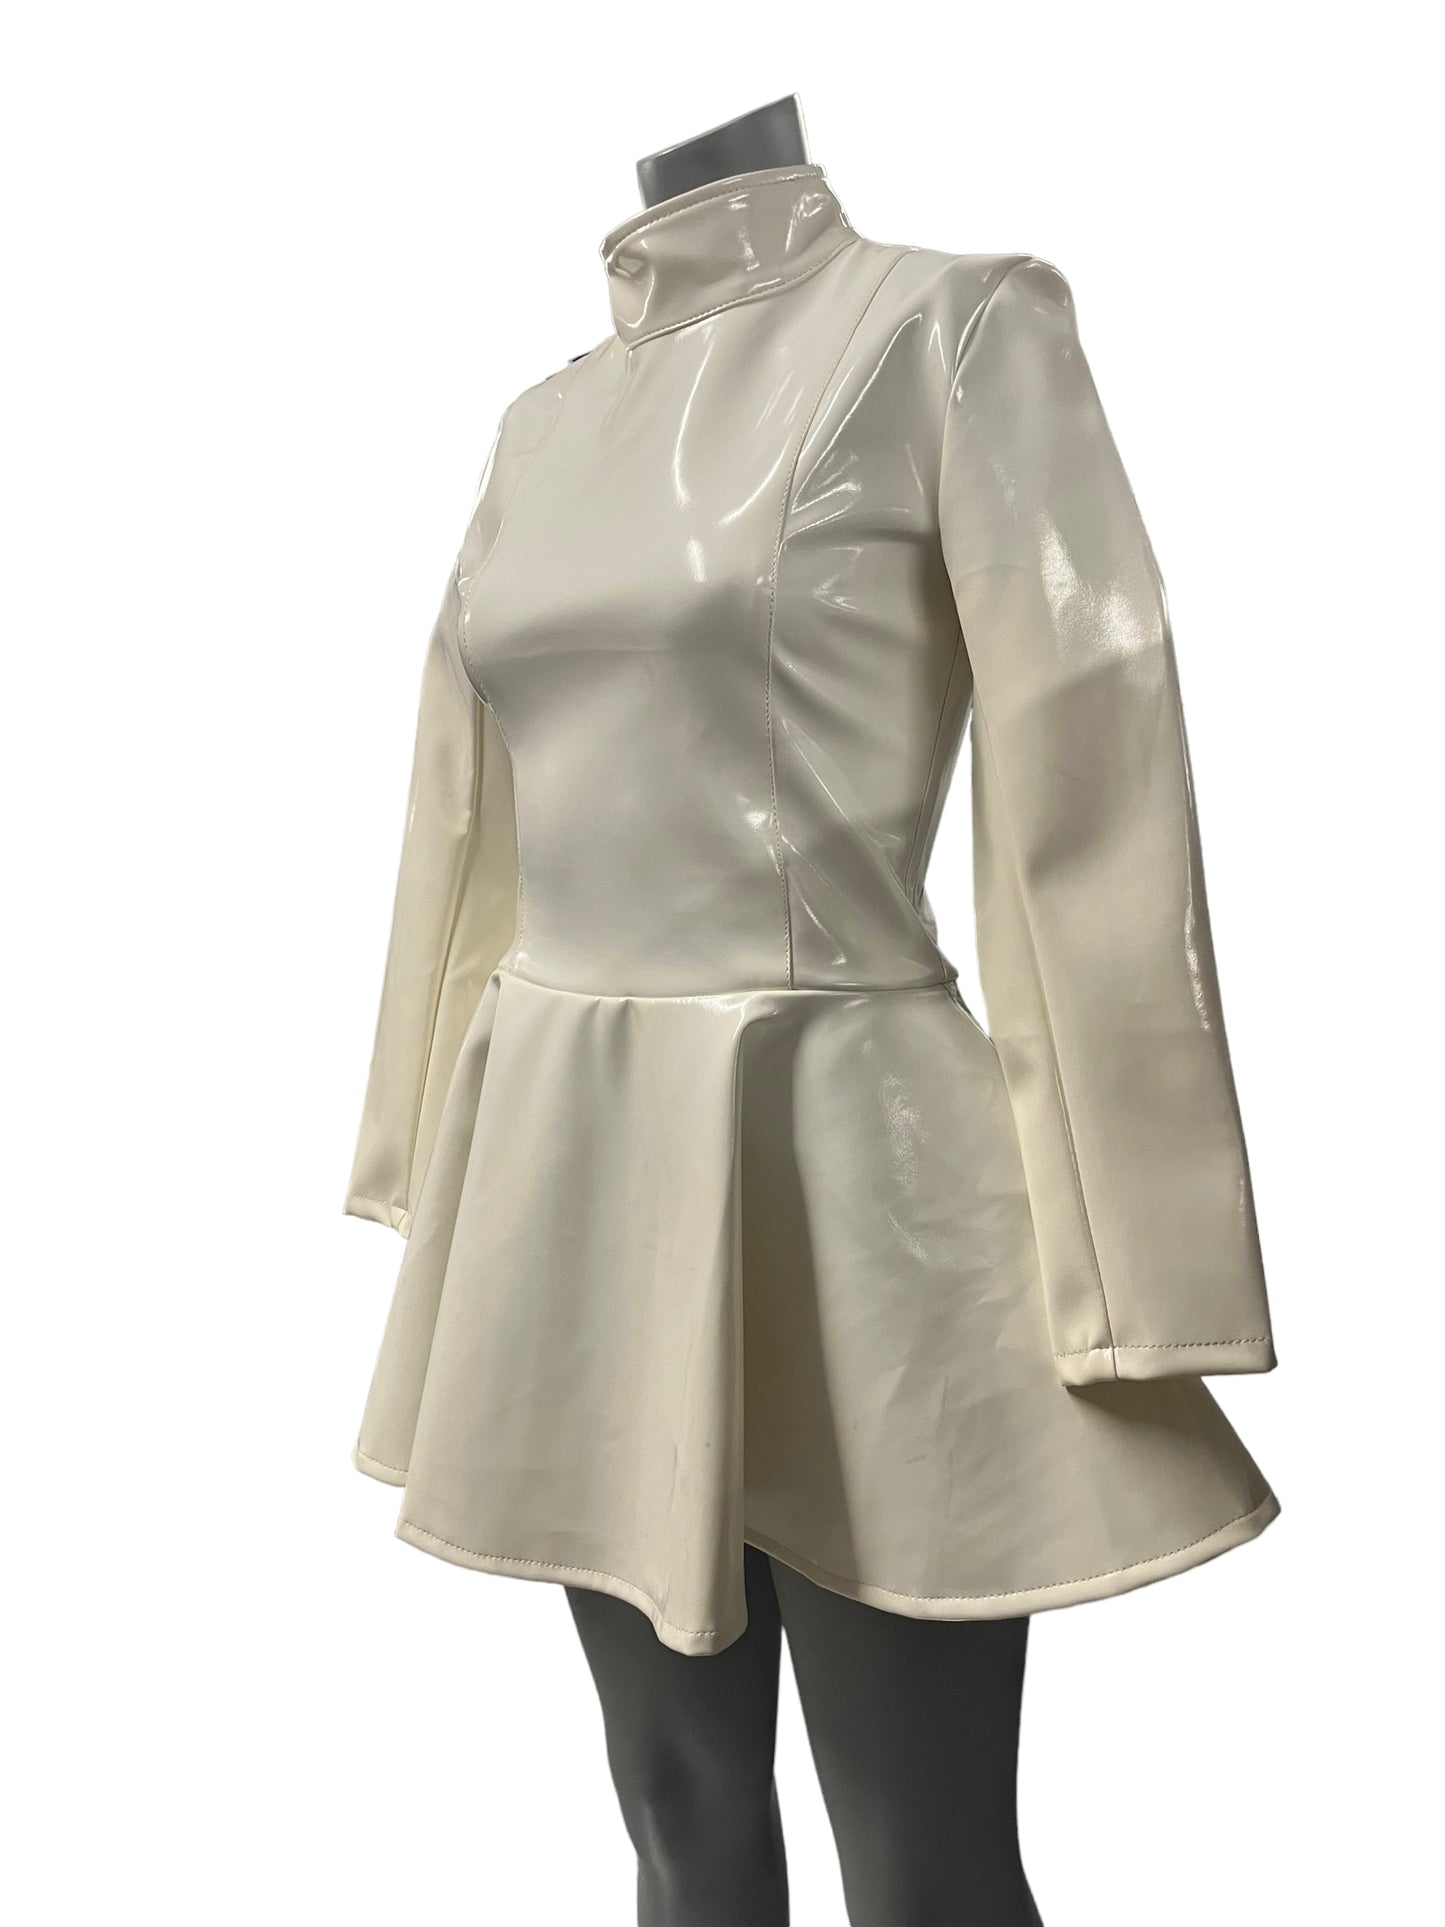 Fashion World - LL127 -  Elegant White Dress - Size S